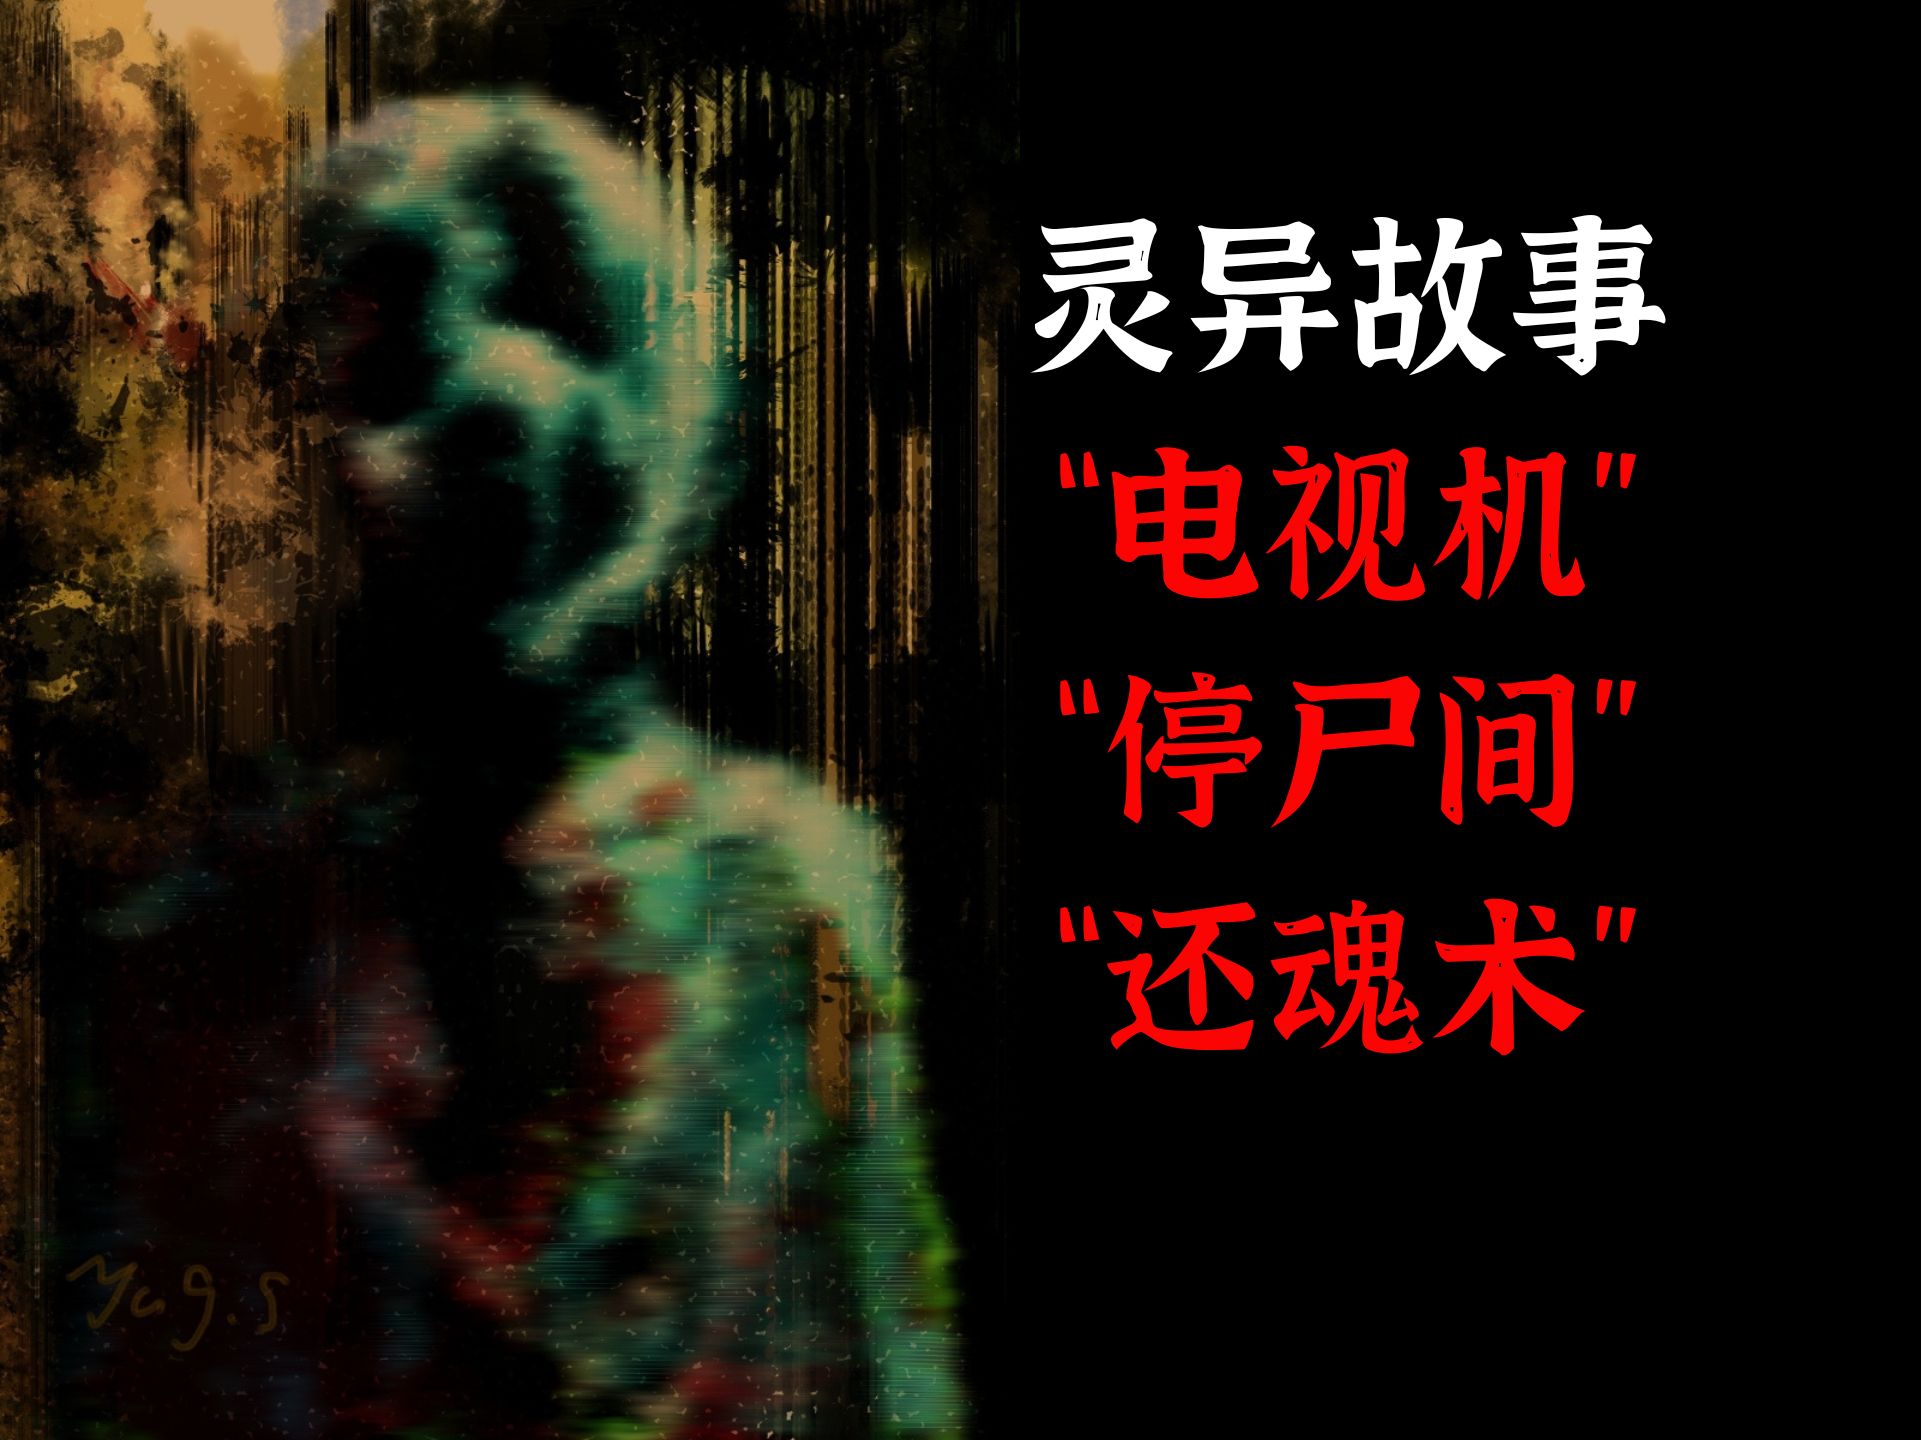 【中国灵异事件】广州人都知道的灵异传说，恐怖的荔湾广场“八棺镇邪”之谜_哔哩哔哩 (゜-゜)つロ 干杯~-bilibili